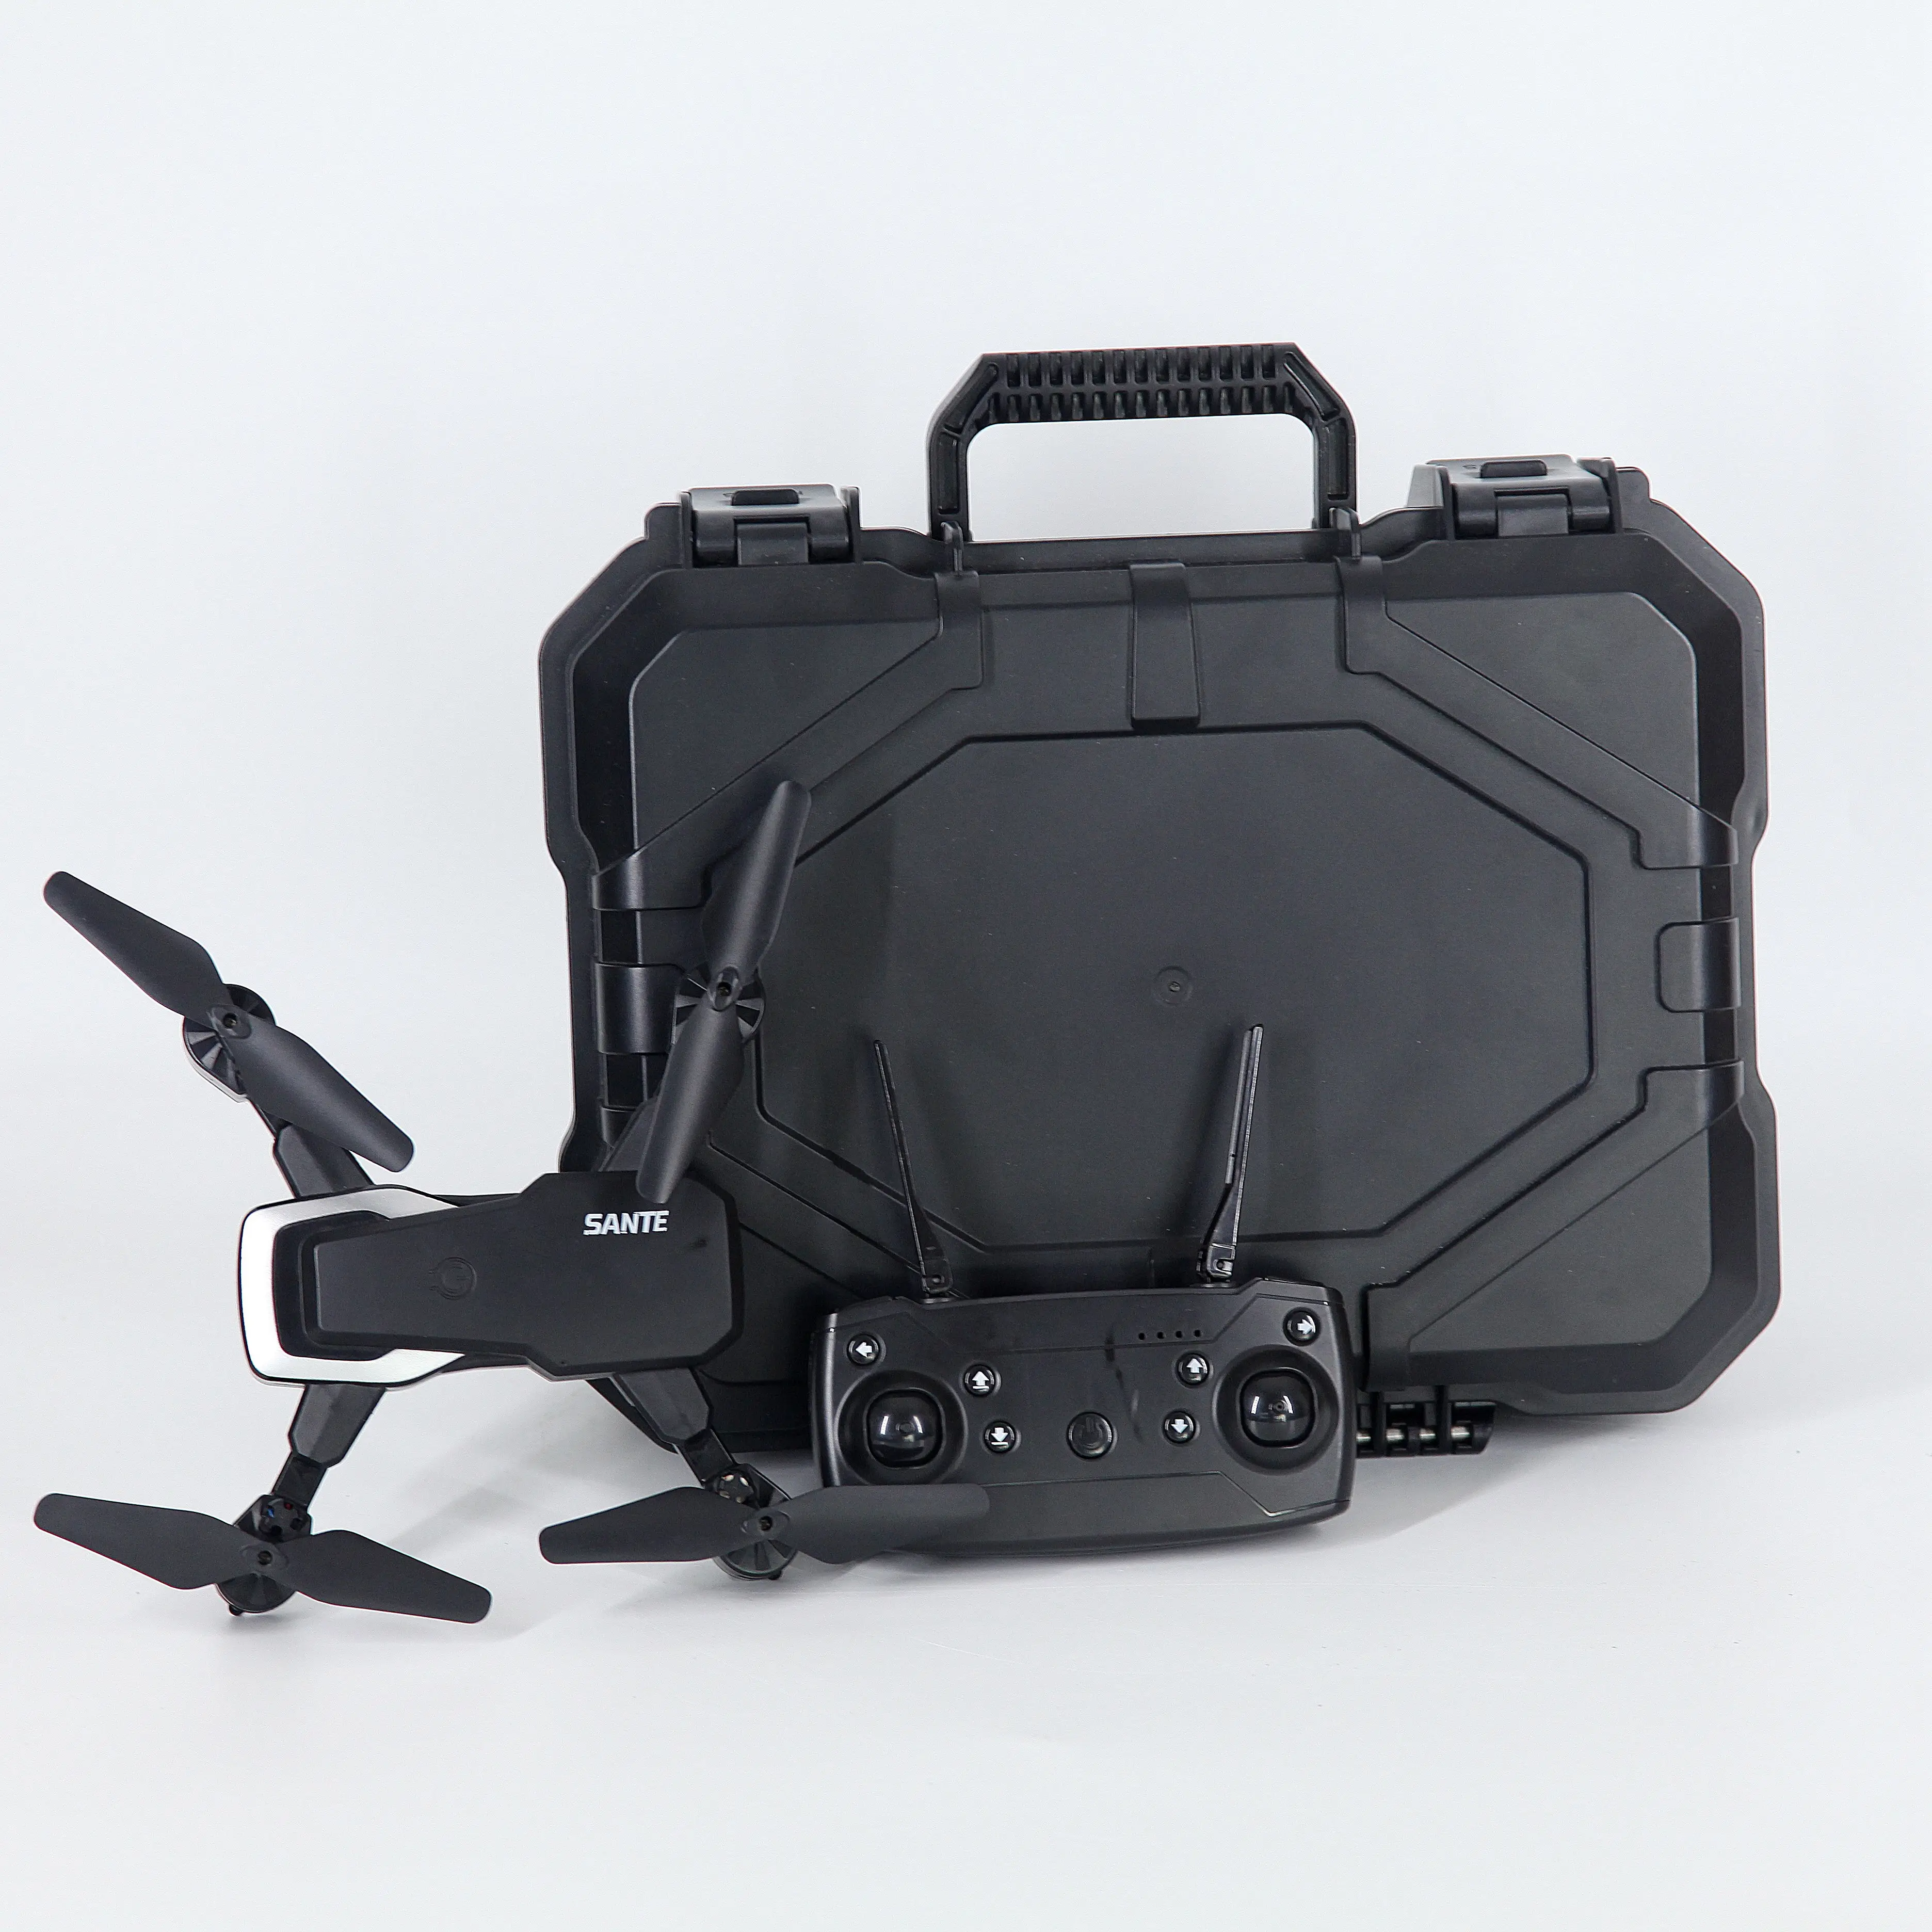 Custodia in plastica Dji proiettore custodia rigida per fotocamera Drone custodia da caccia da campeggio in alluminio impermeabile di alta qualità OEM